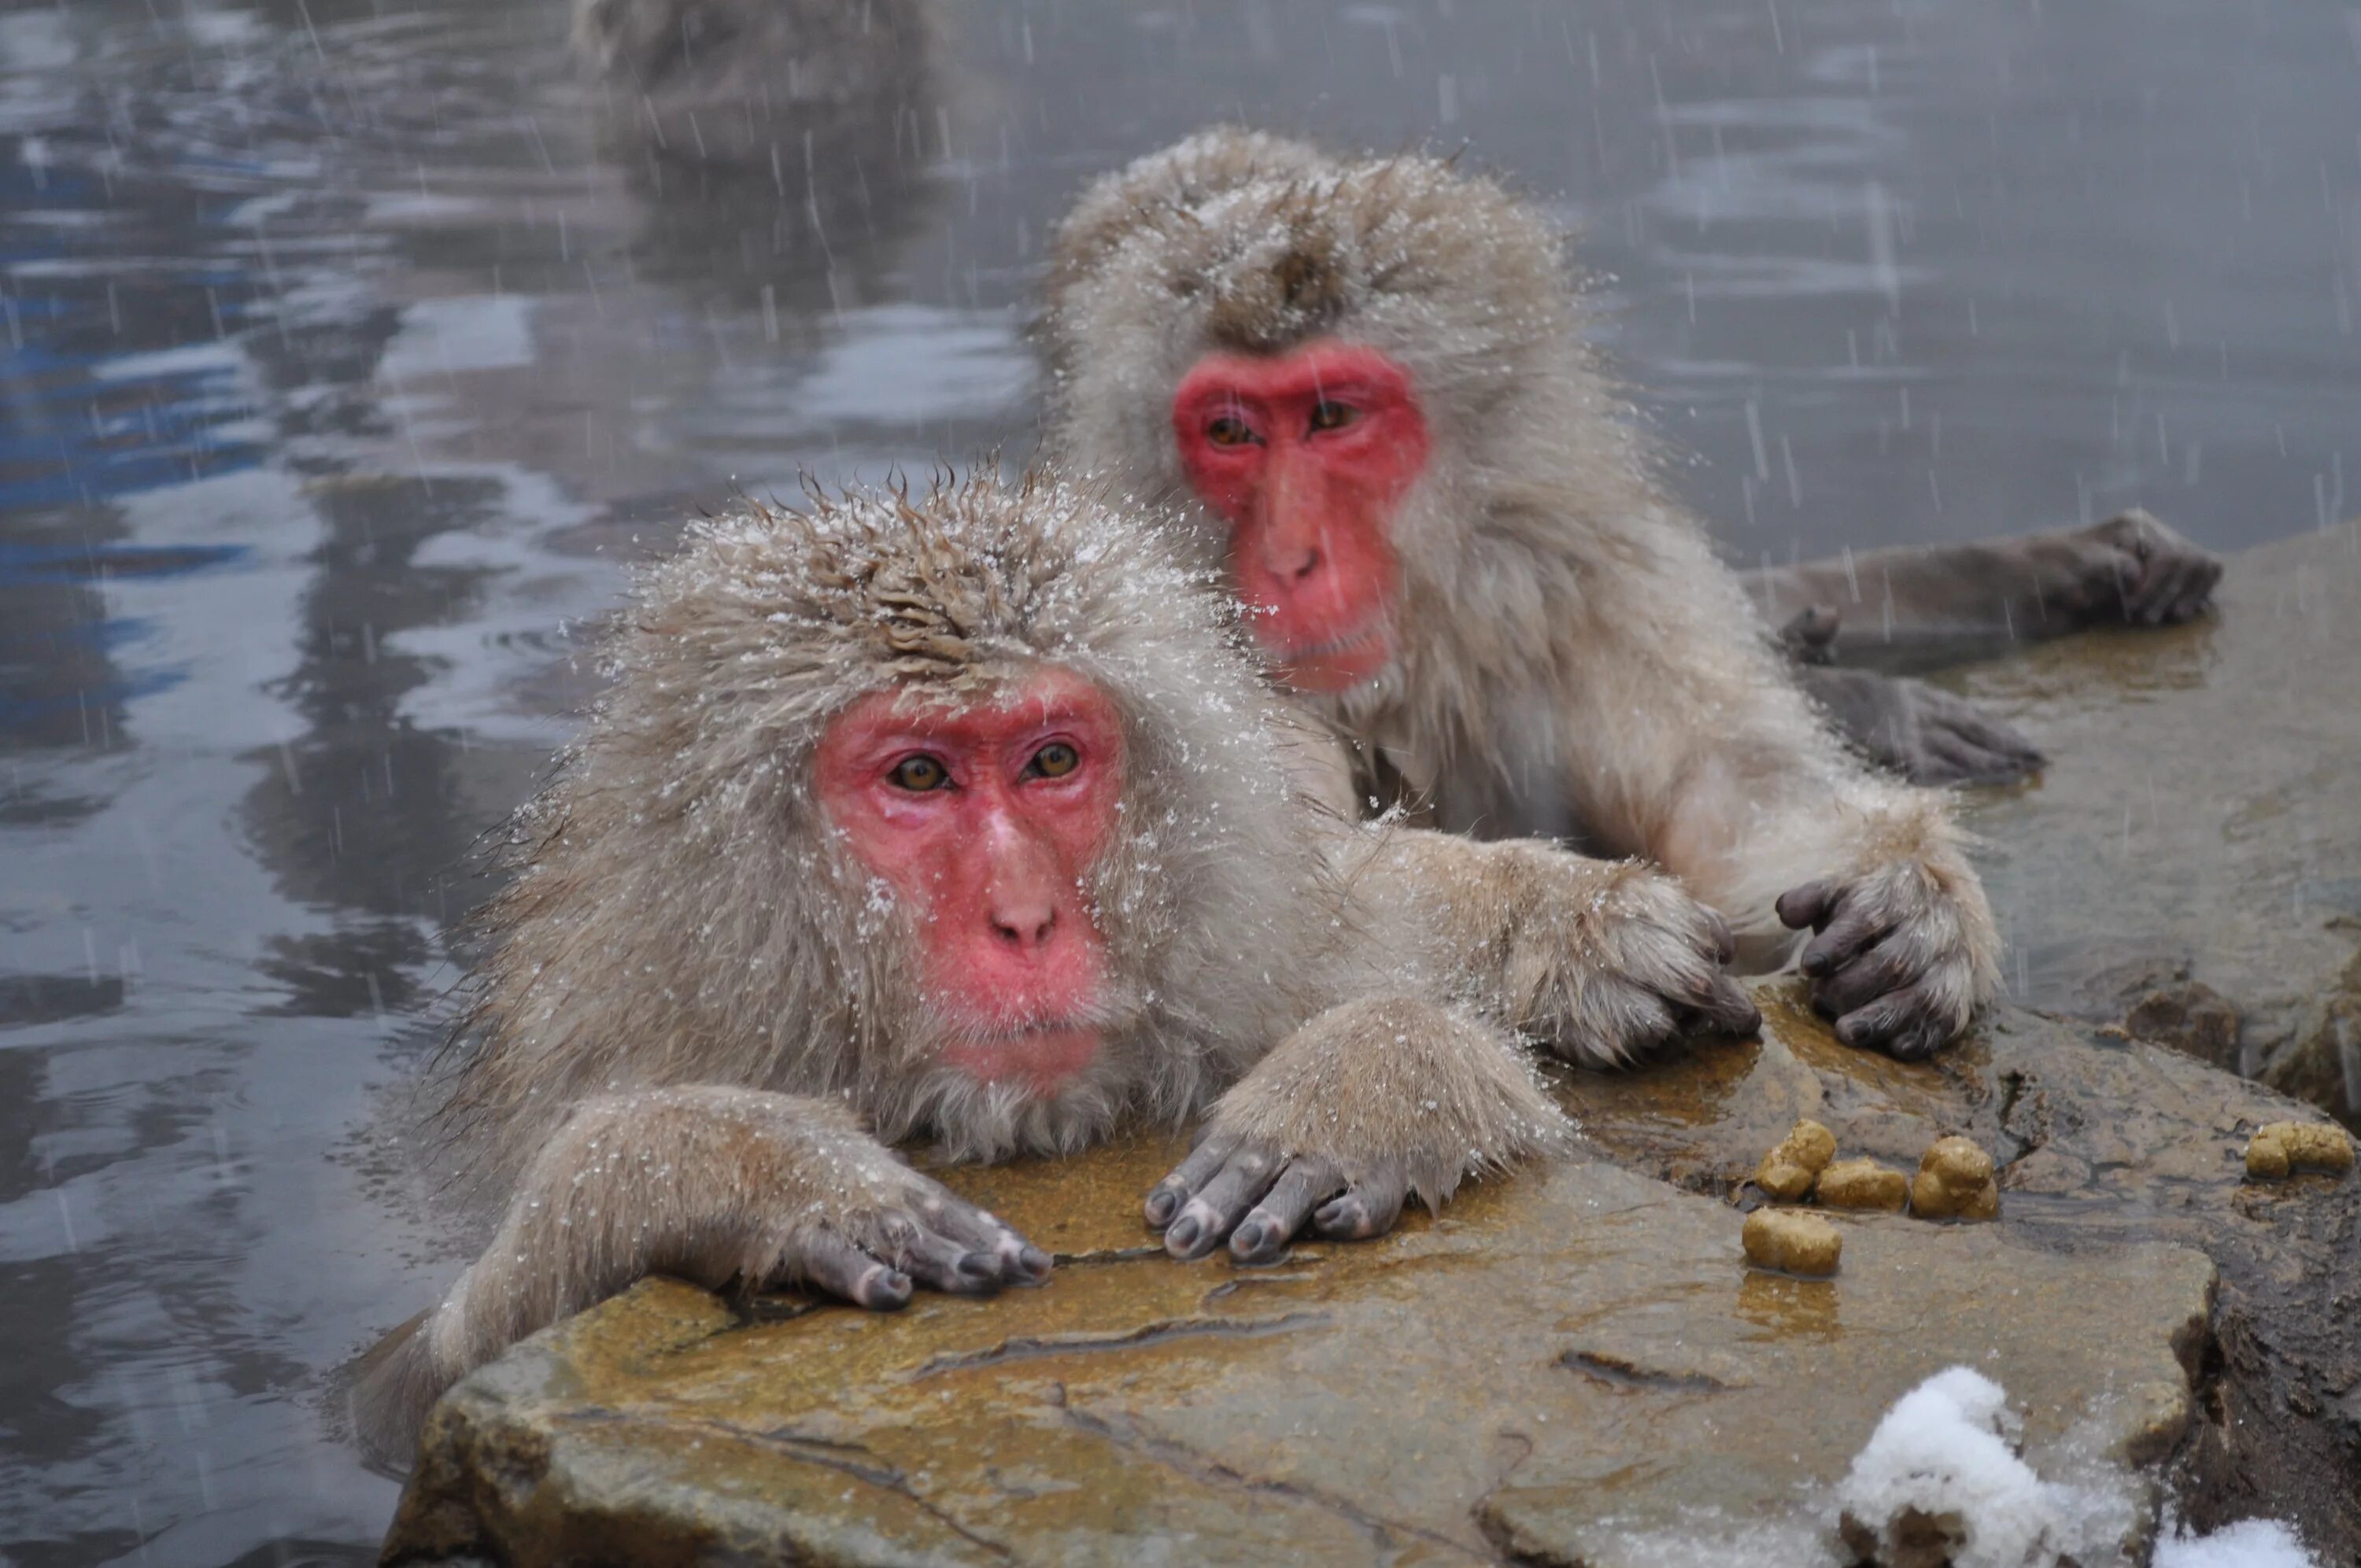 Обезьяны в Японии в горячих источниках. Парк обезьян Дзигокудани. Японские макаки в горячих источниках зимой. Снежные обезьяны в горячих источниках Нагано. Группа обезьяны в теплой воде слушать